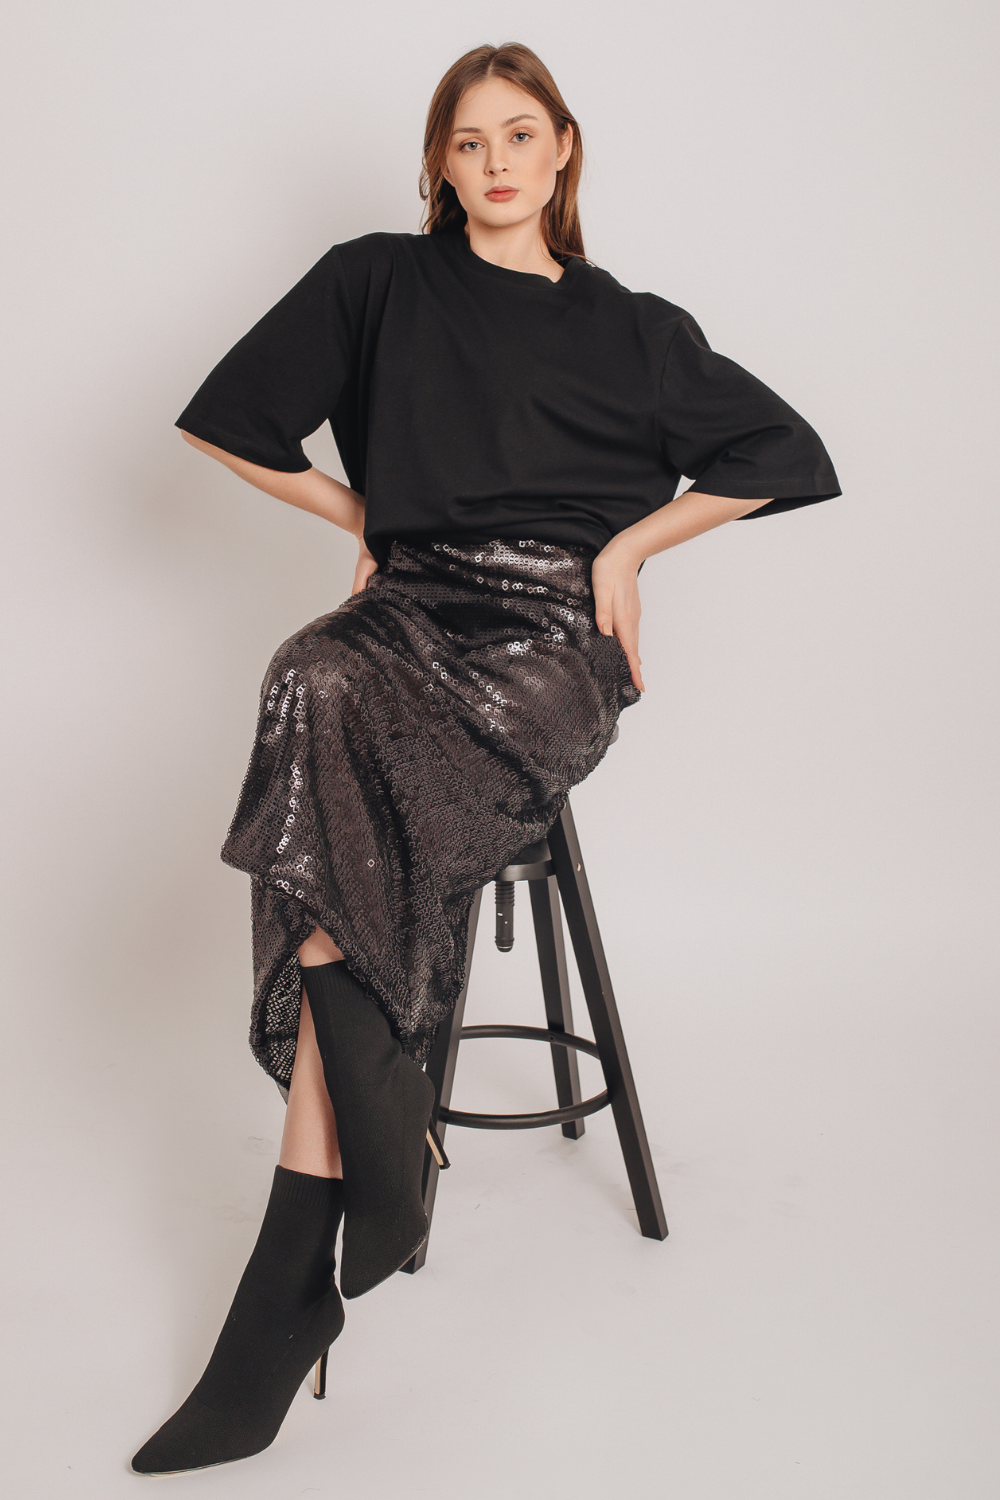 Sequin Maxi Skirt With Slit, (MashaBakaeva), B-24